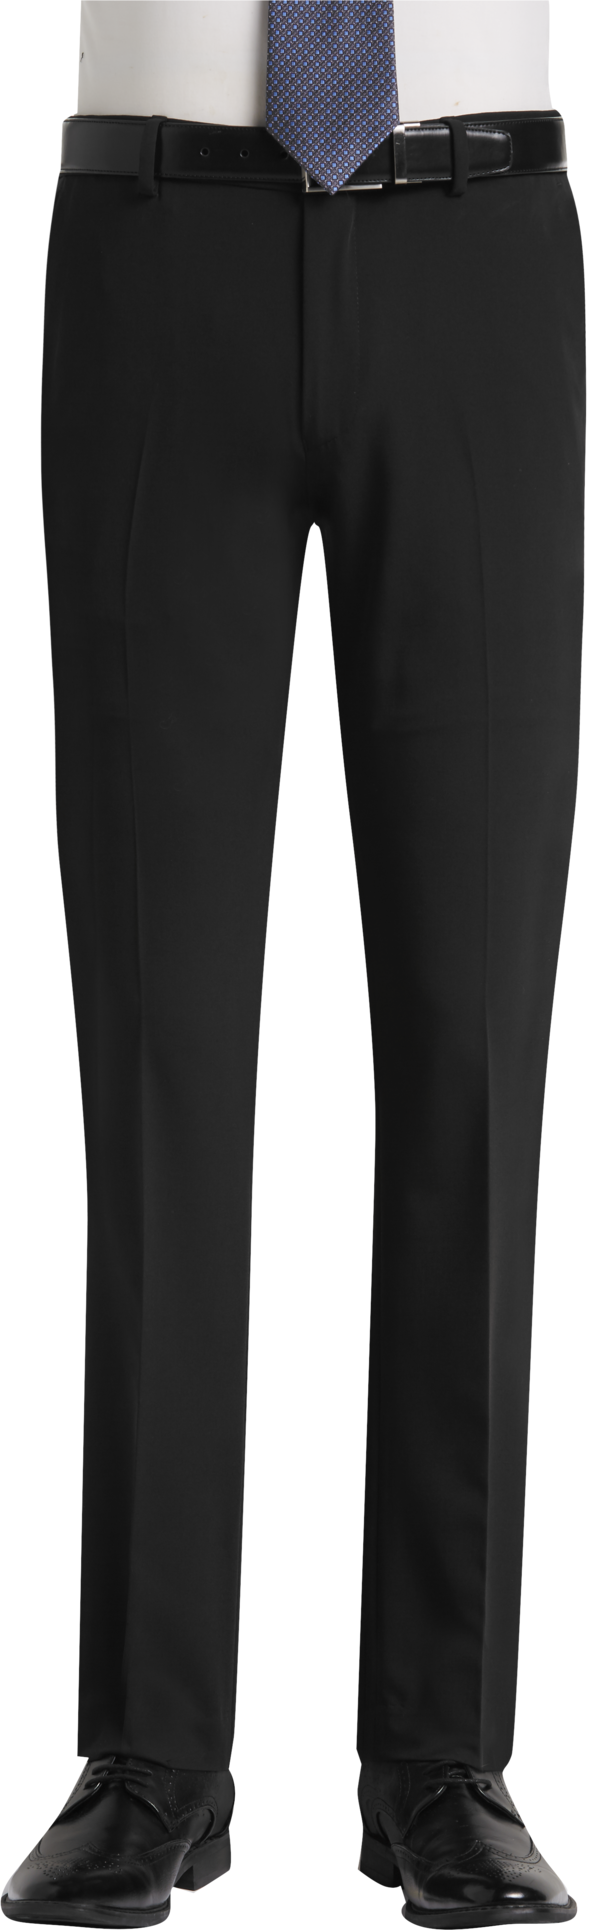 Egara Men's Extreme Slim Fit Dress Pants Black - Size: 34W x 32L - Black - male